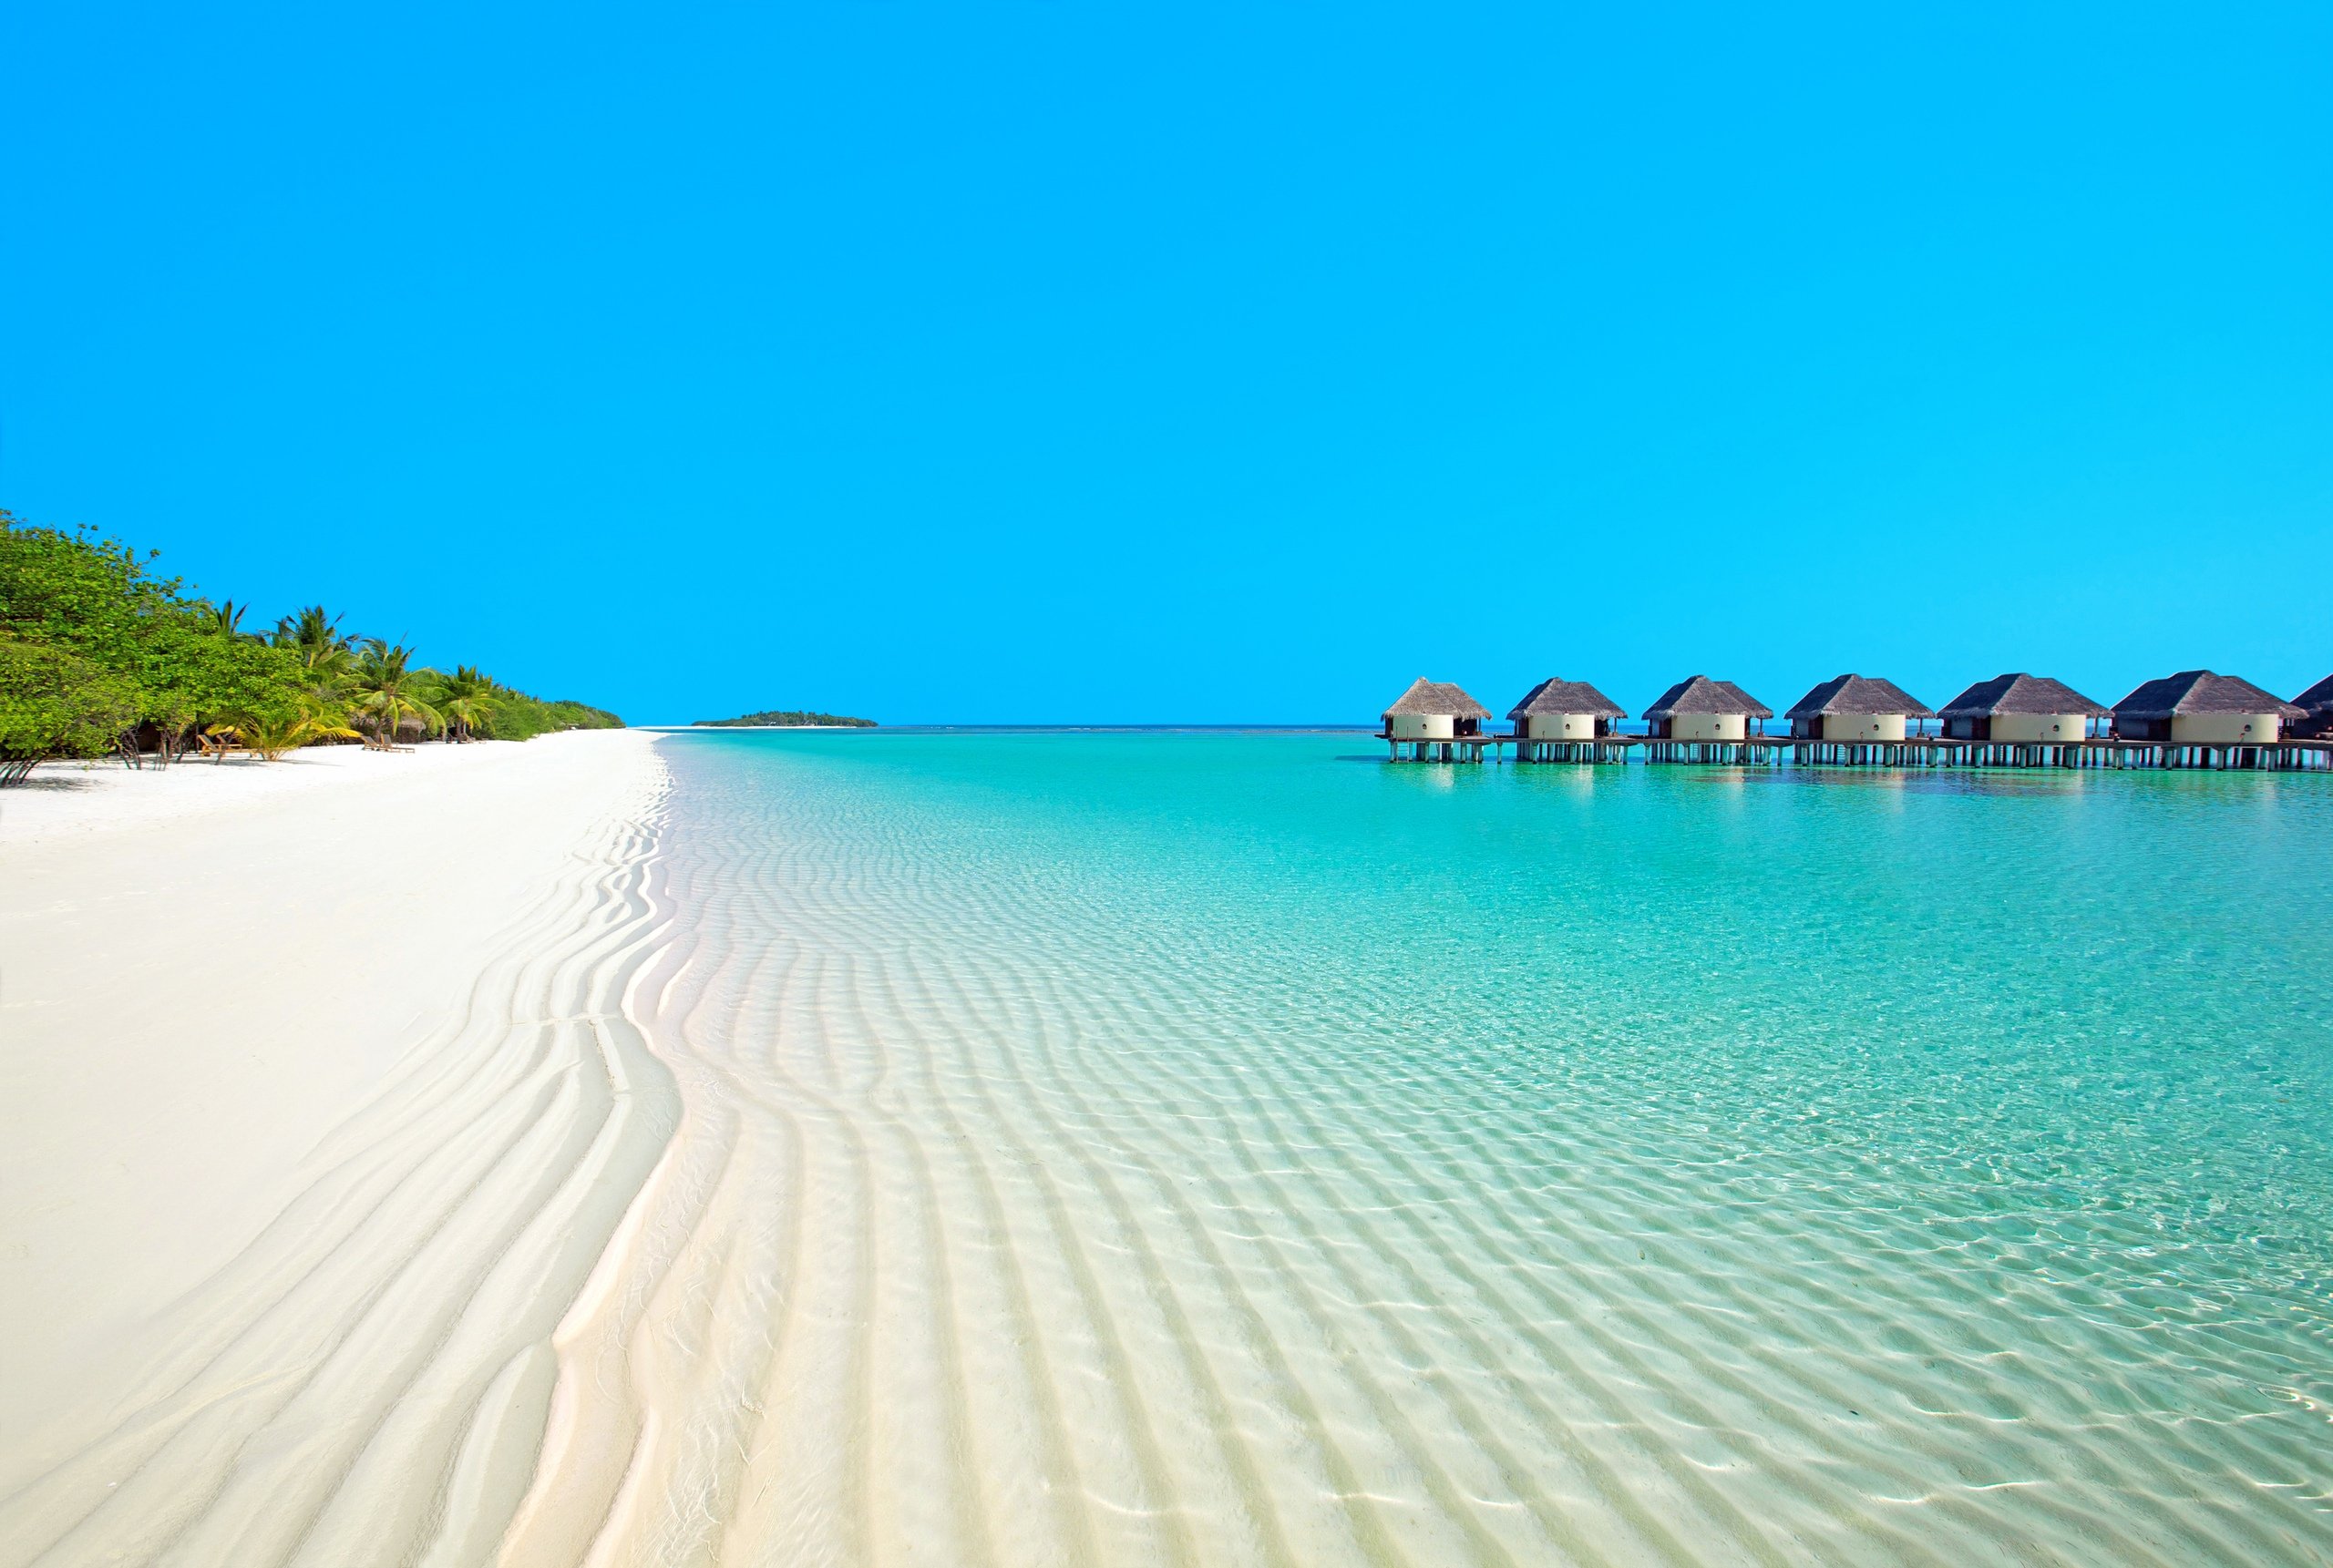 Остров Канухура Мальдивы. Парадайз Айленд Мальдивы. Остров Ваадху Мальдивы. Ла-Маддалена (архипелаг). Покажи красивый пляж